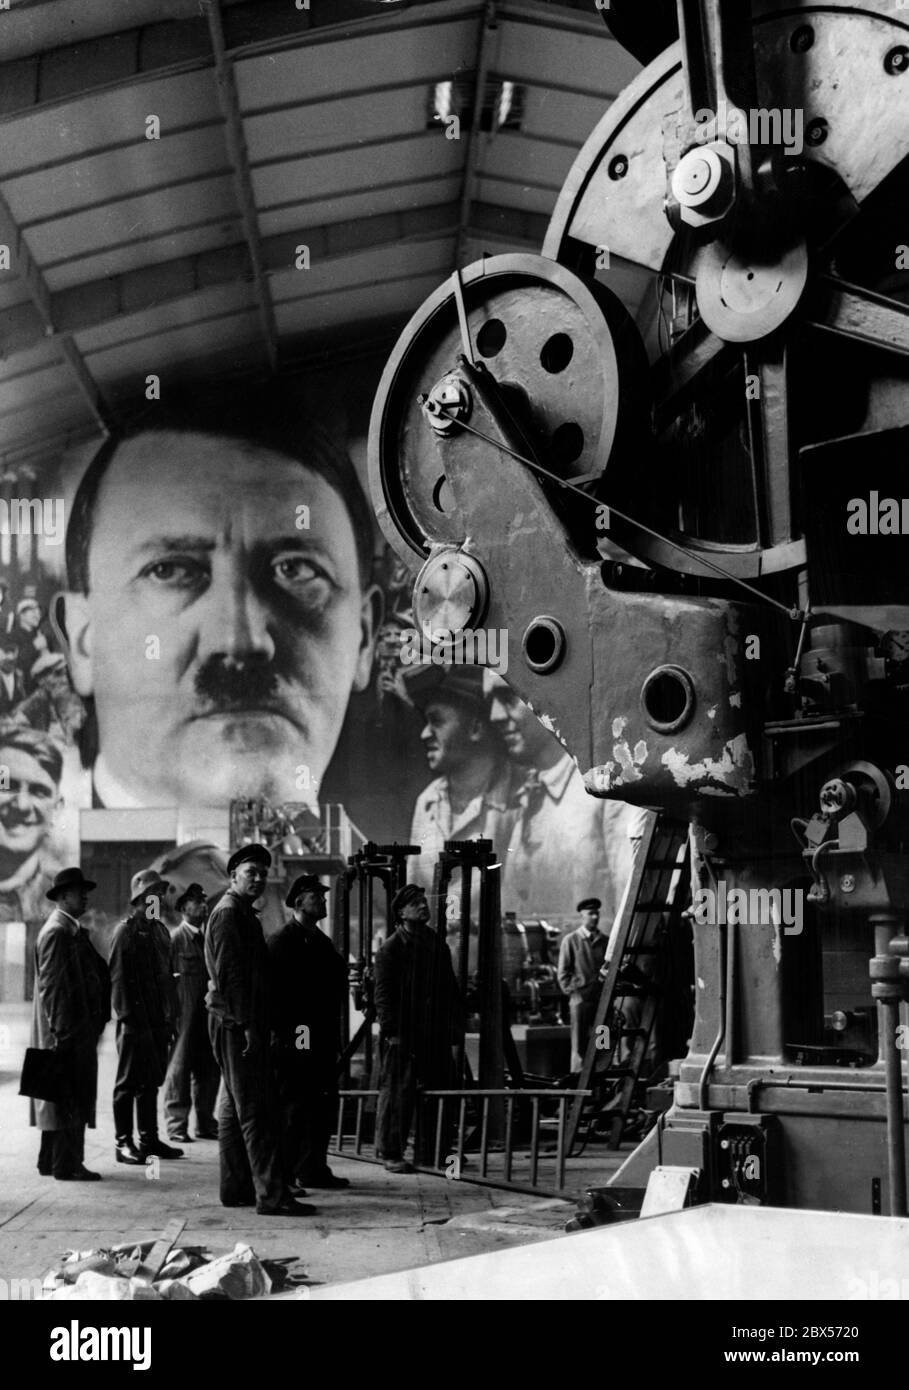 Con la mostra 'Gebt mir vier Jahre Zeit' (Dammi quattro anni), il governo del Reich dimostra il compimento delle promesse di Adolf Hitler (in ritratto) fatte nel 1933, con giganteschi diagrammi e mostre. Foto Stock